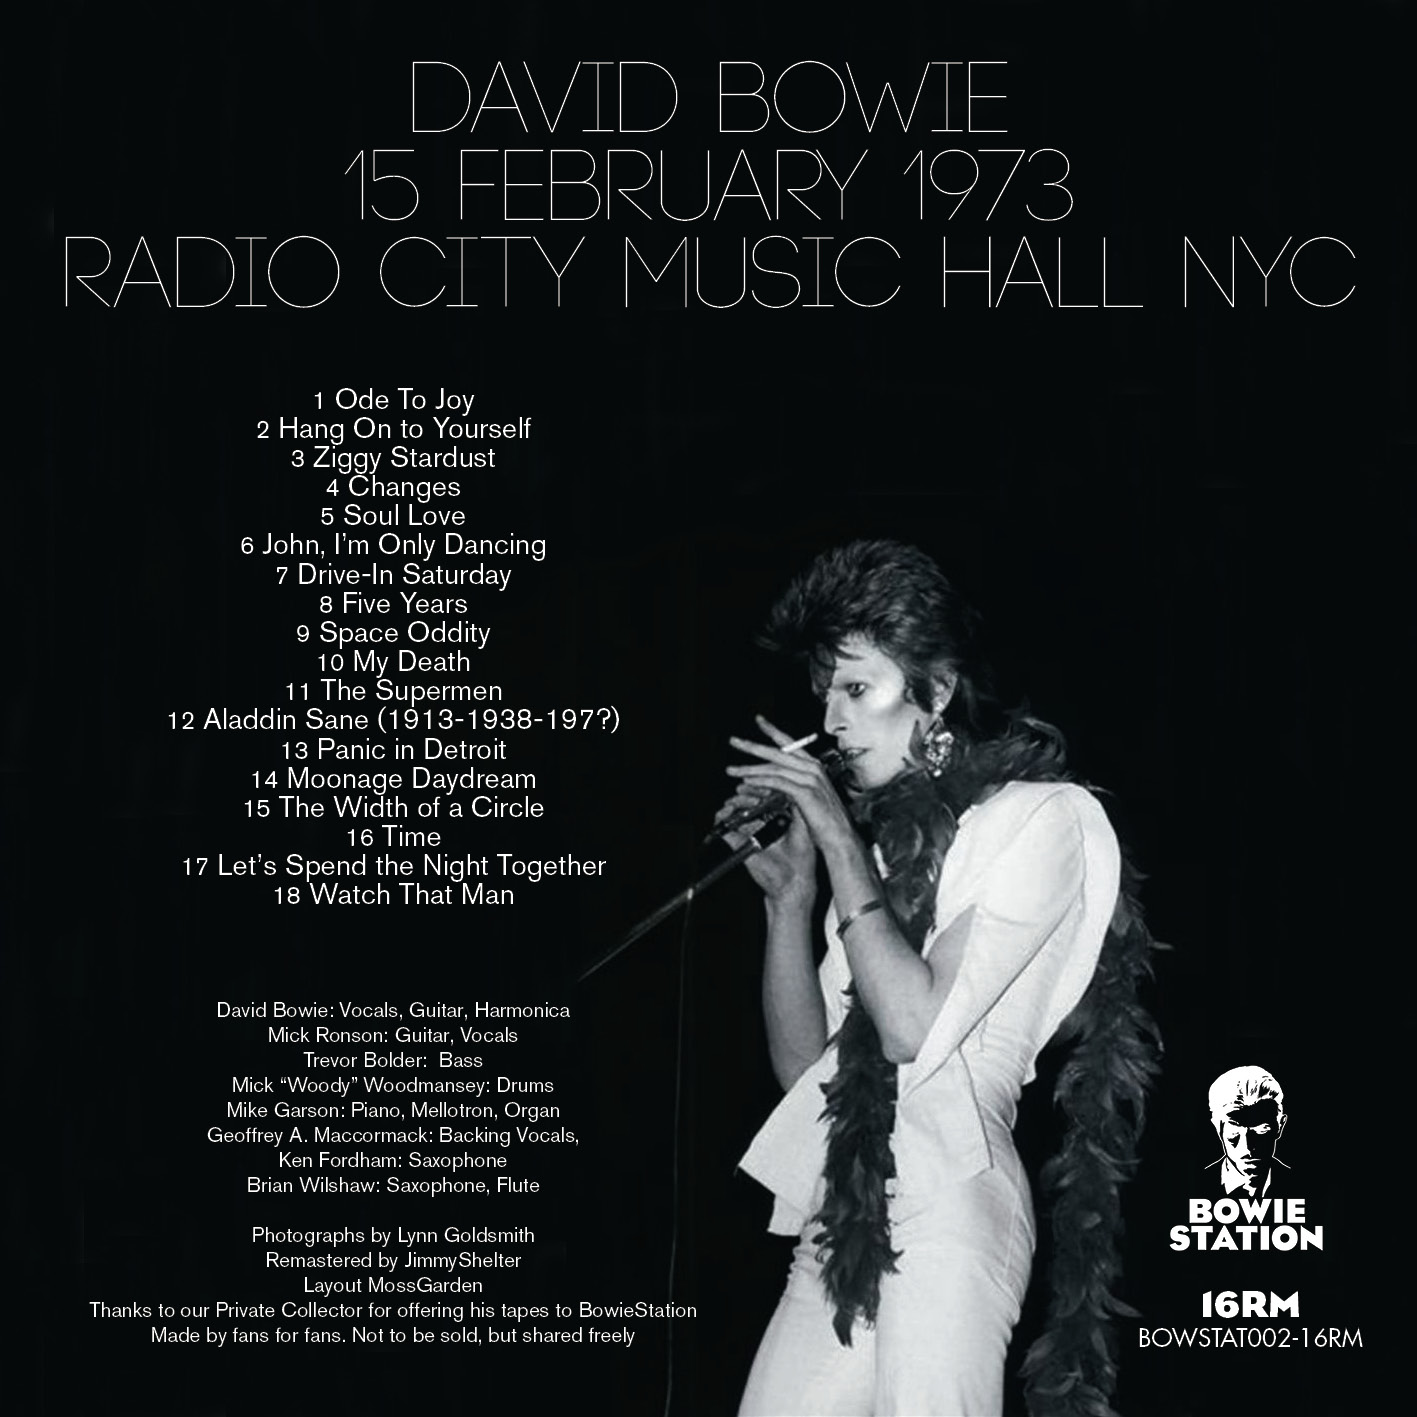 DavidBowie1973-02-15RadioCityMusicHallNYC (3).jpg